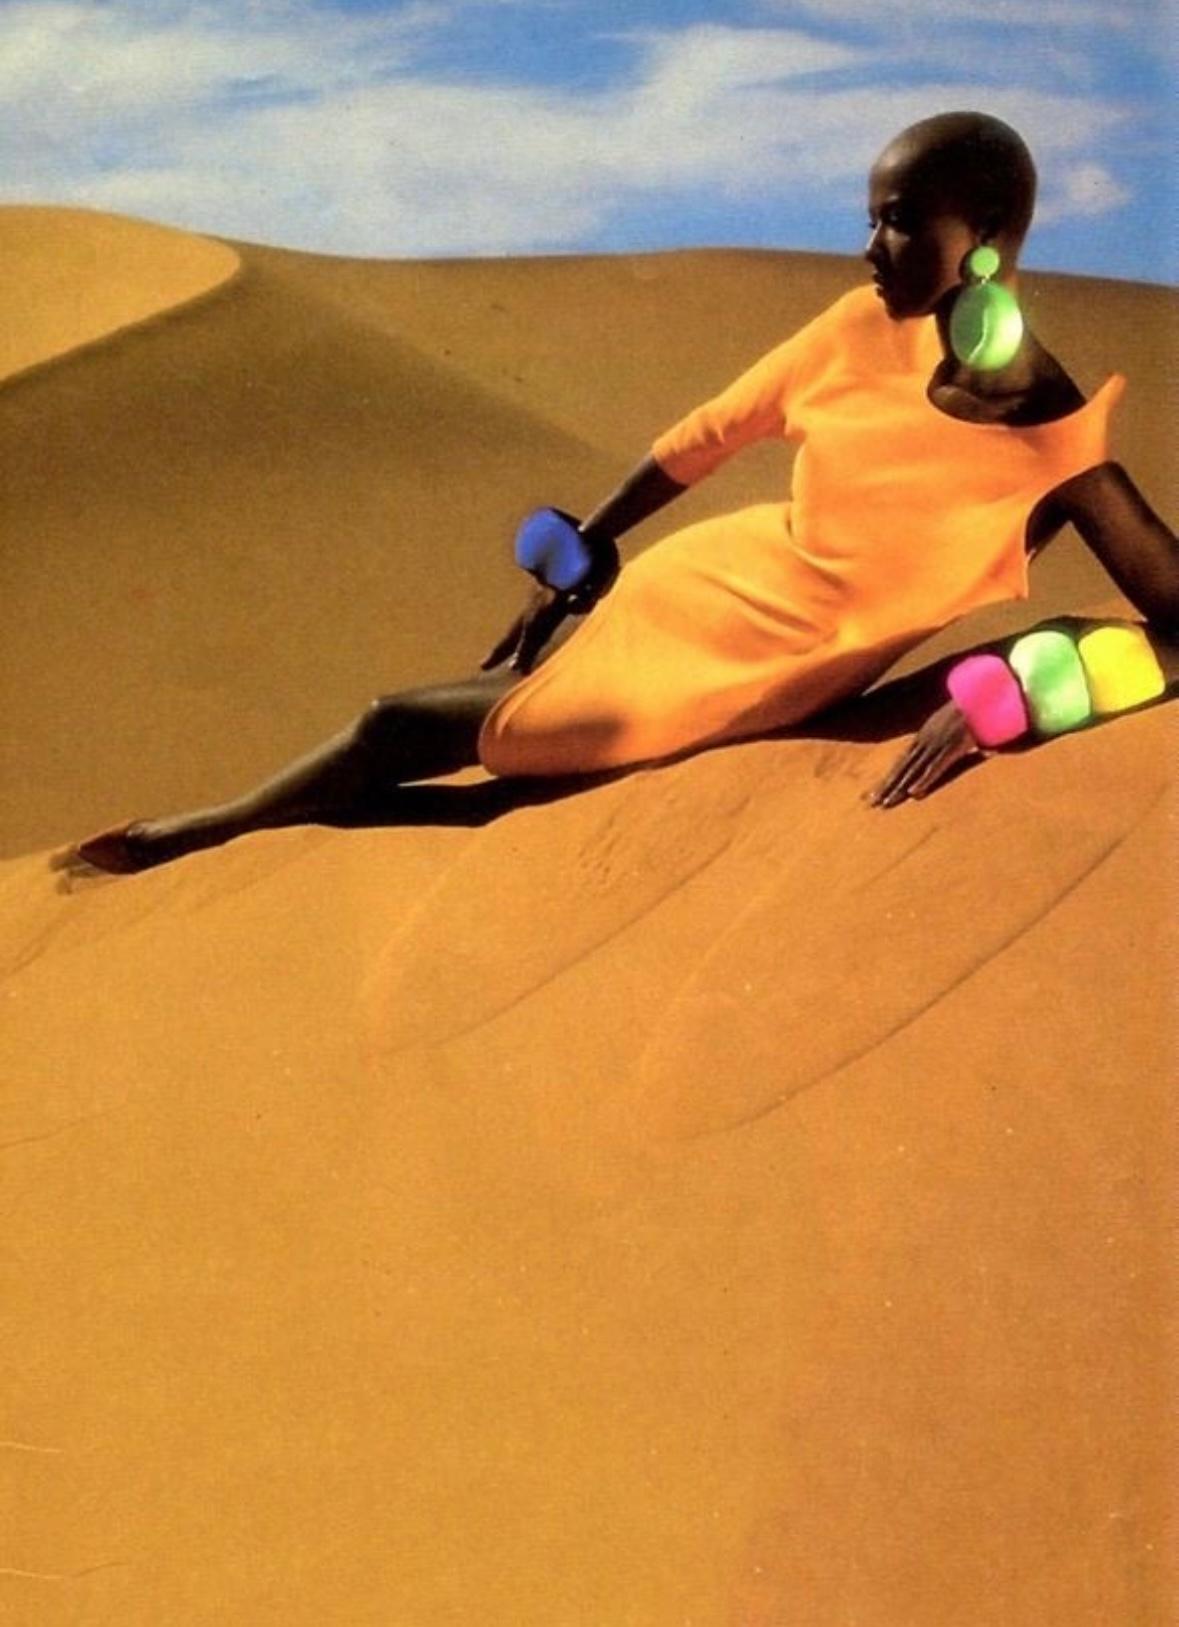 Collectional présente une remarquable robe asymétrique conçue par Manfred Thierry Mugler pour sa collection printemps/été 1988. Cette robe spectaculaire a fait ses débuts sur le podium, portée par Naomi Campbell, âgée de 17 ans. Mugler a